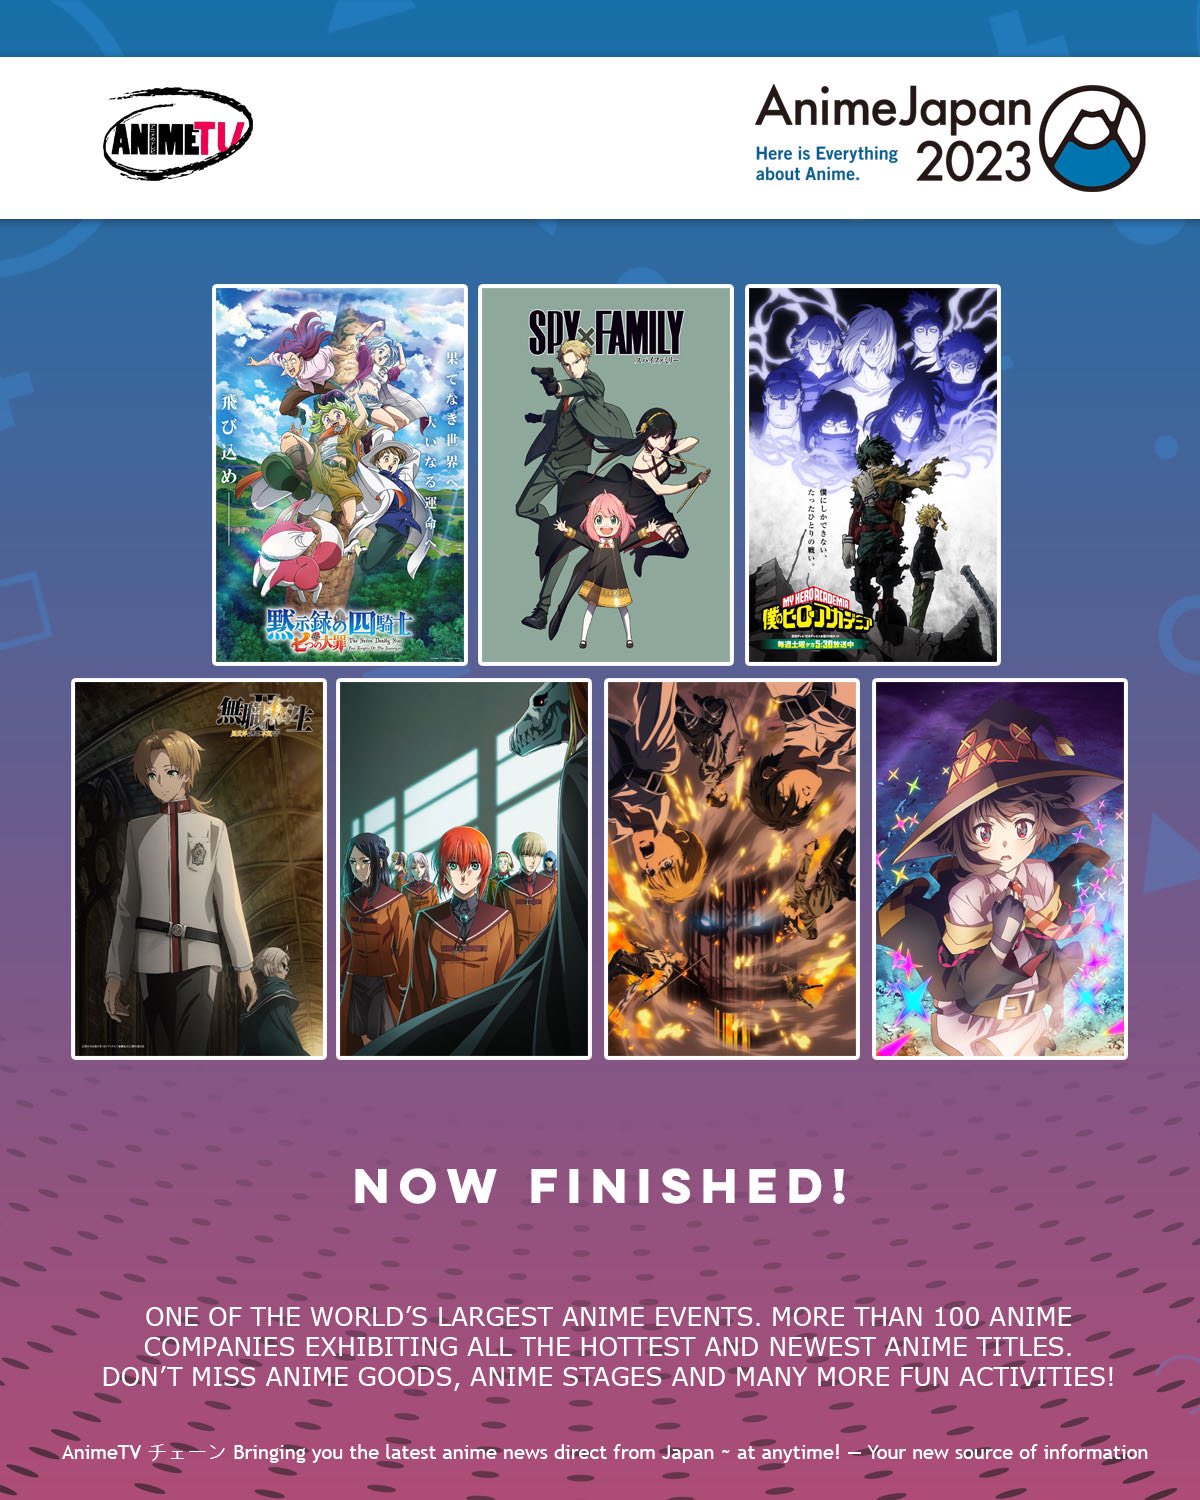 AnimeJapan 2023 Official Overseas Account (@aj_overseas) / X